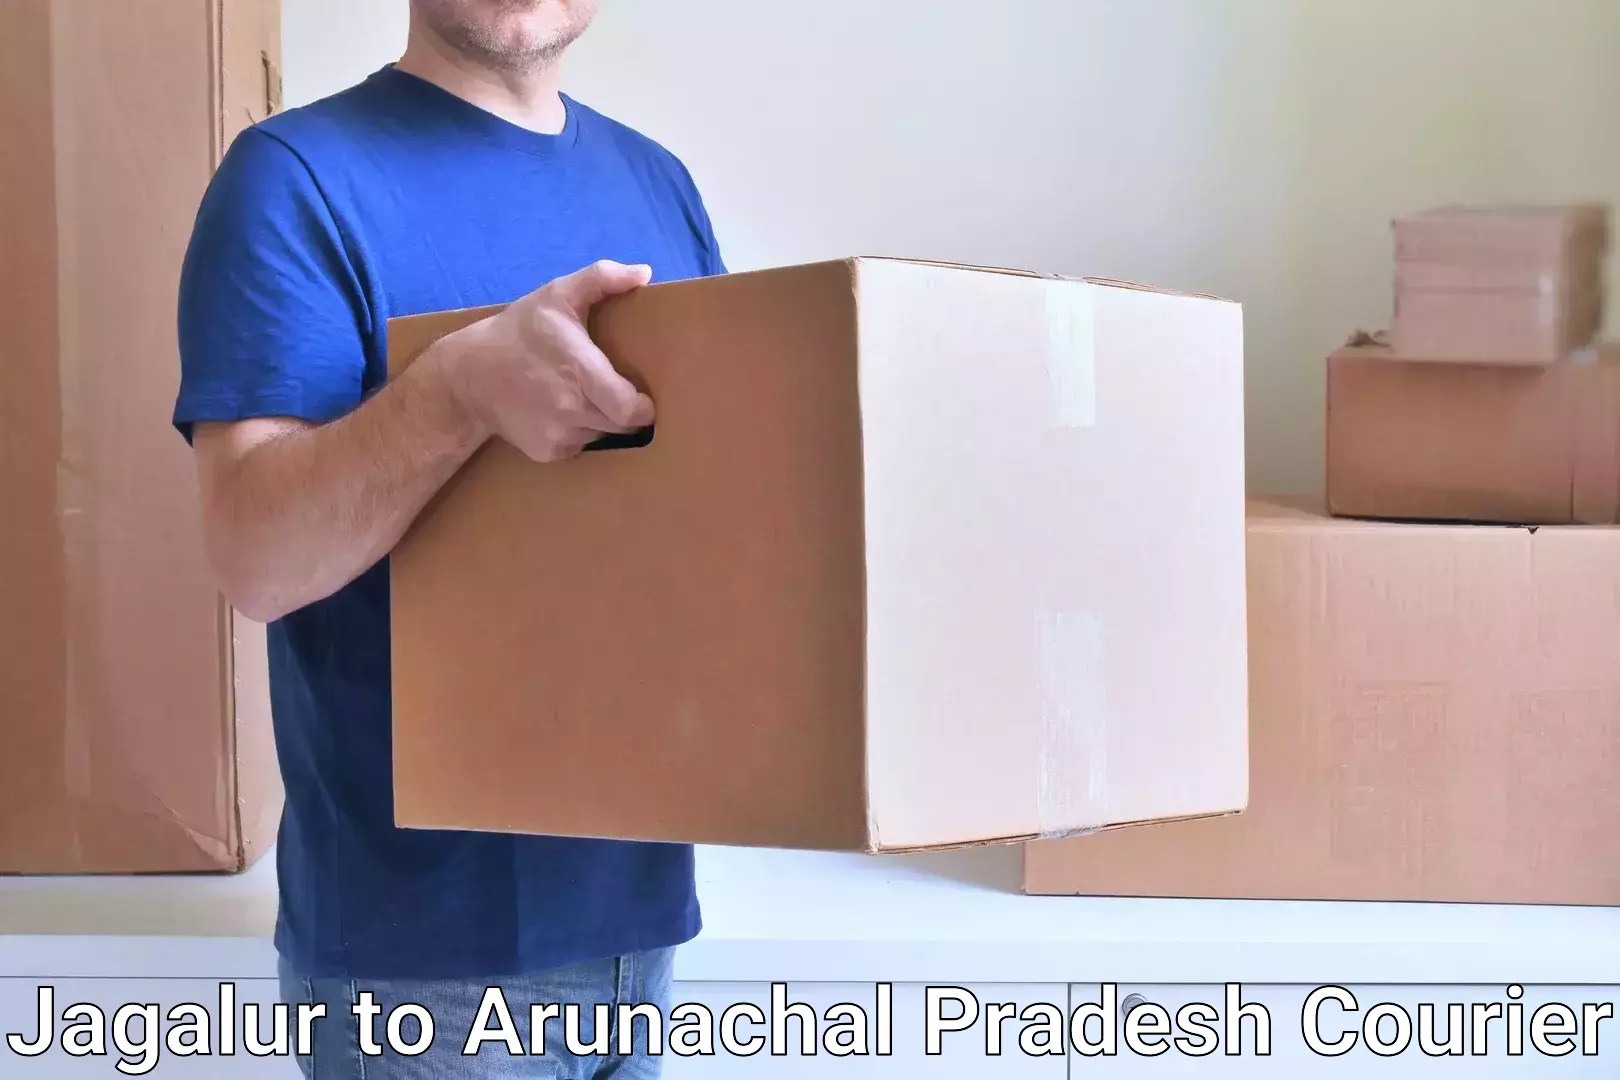 Courier services Jagalur to Arunachal Pradesh